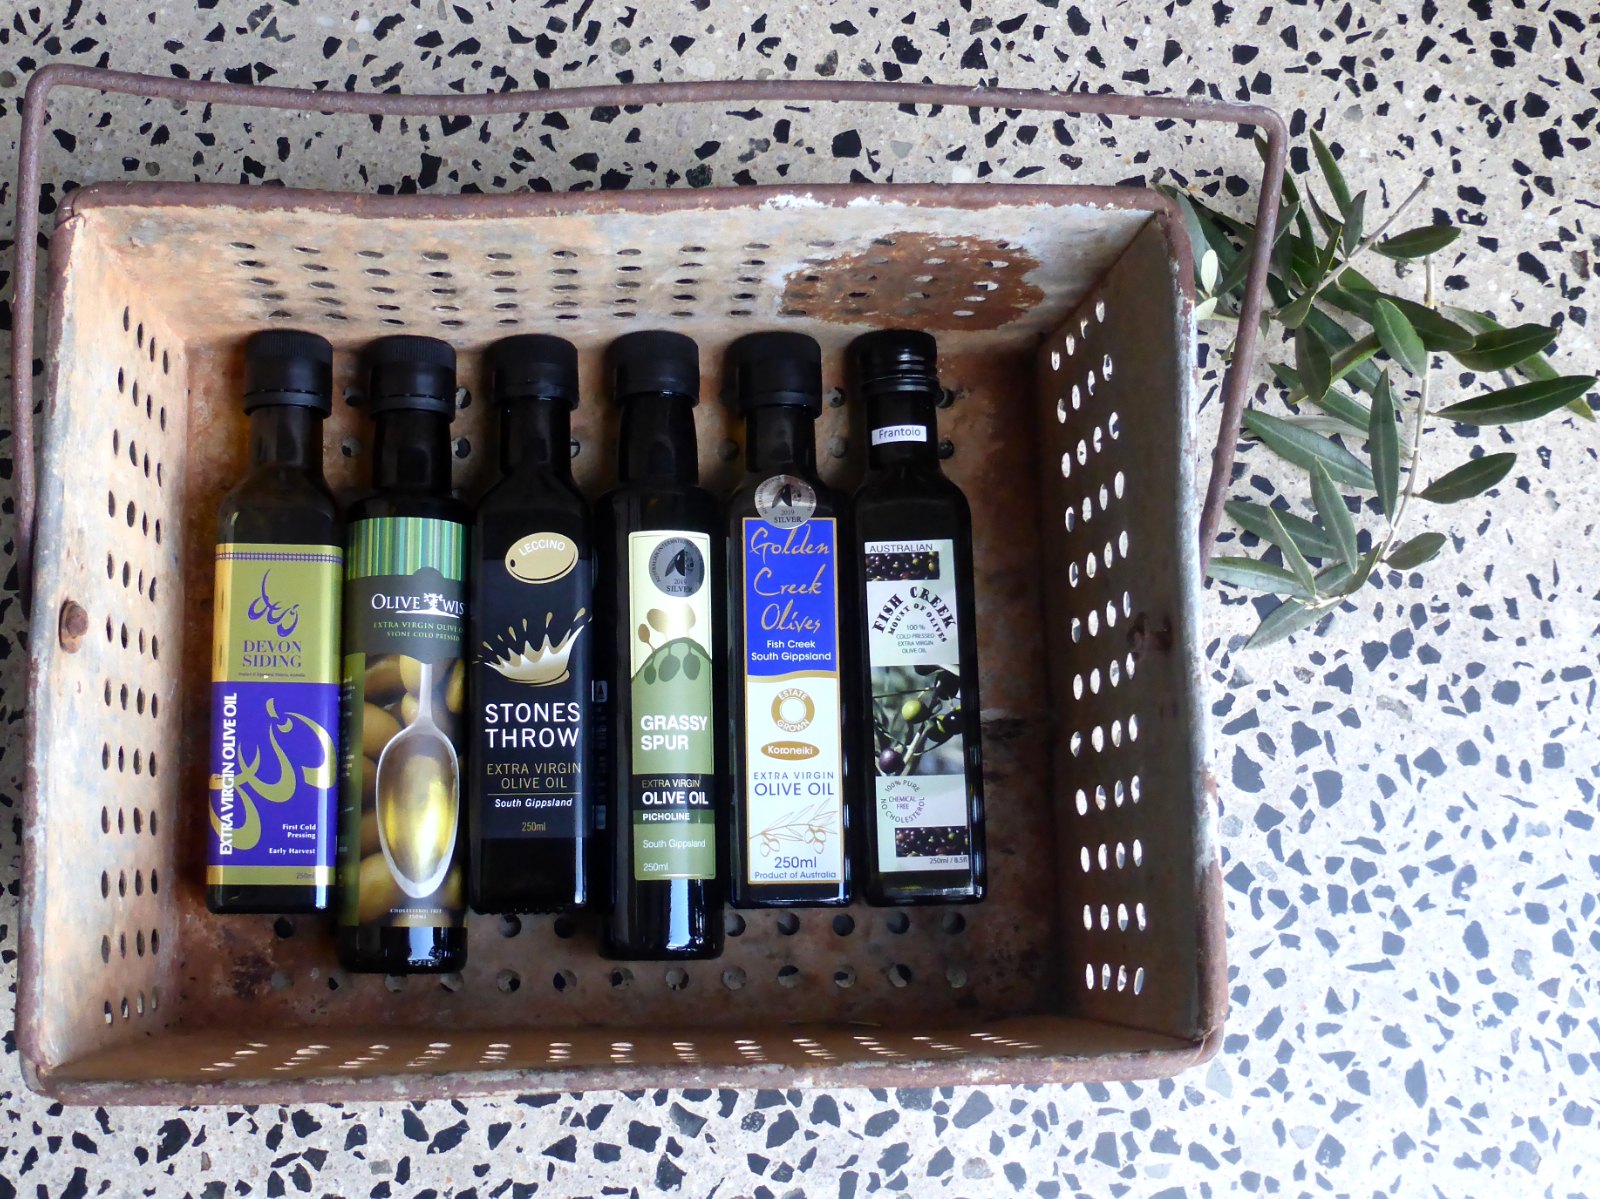 Image of 6 bottles of olive oil from Southern Gippsland Olives olive groves